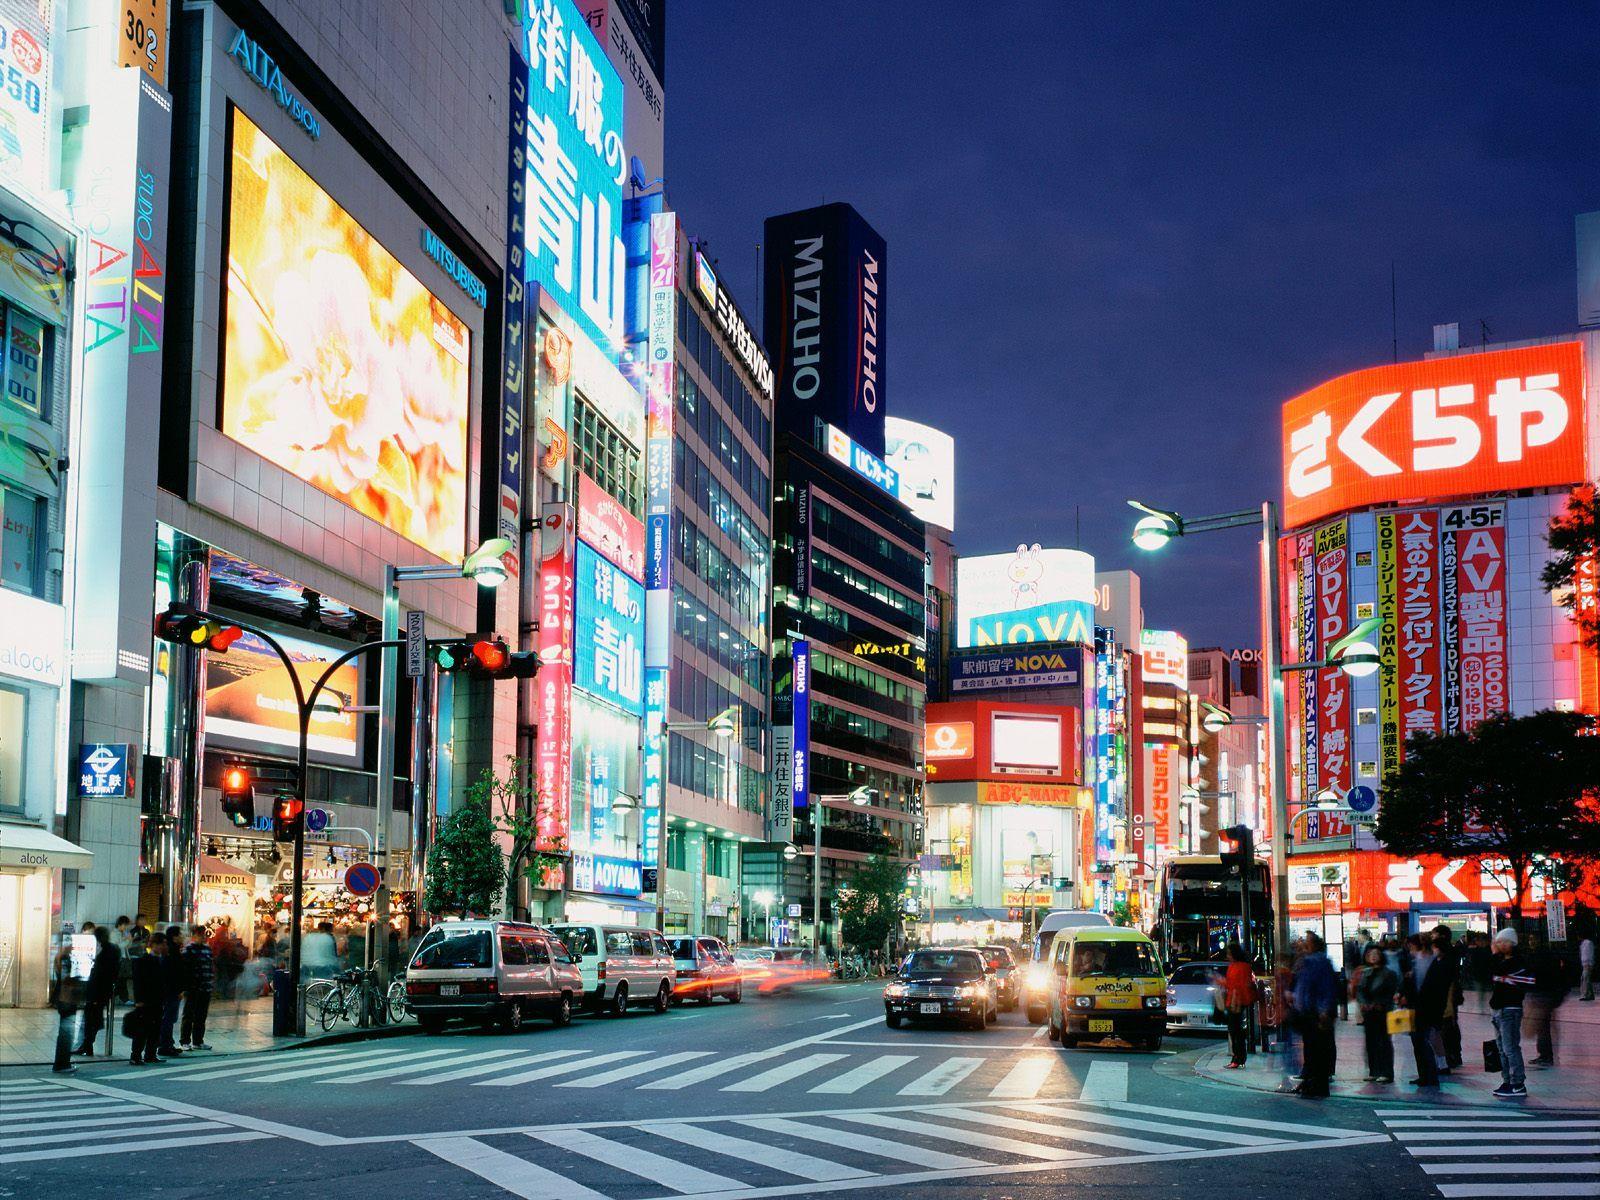 Shinjuku Tokyo Wallpapers - Top Free Shinjuku Tokyo Backgrounds ...